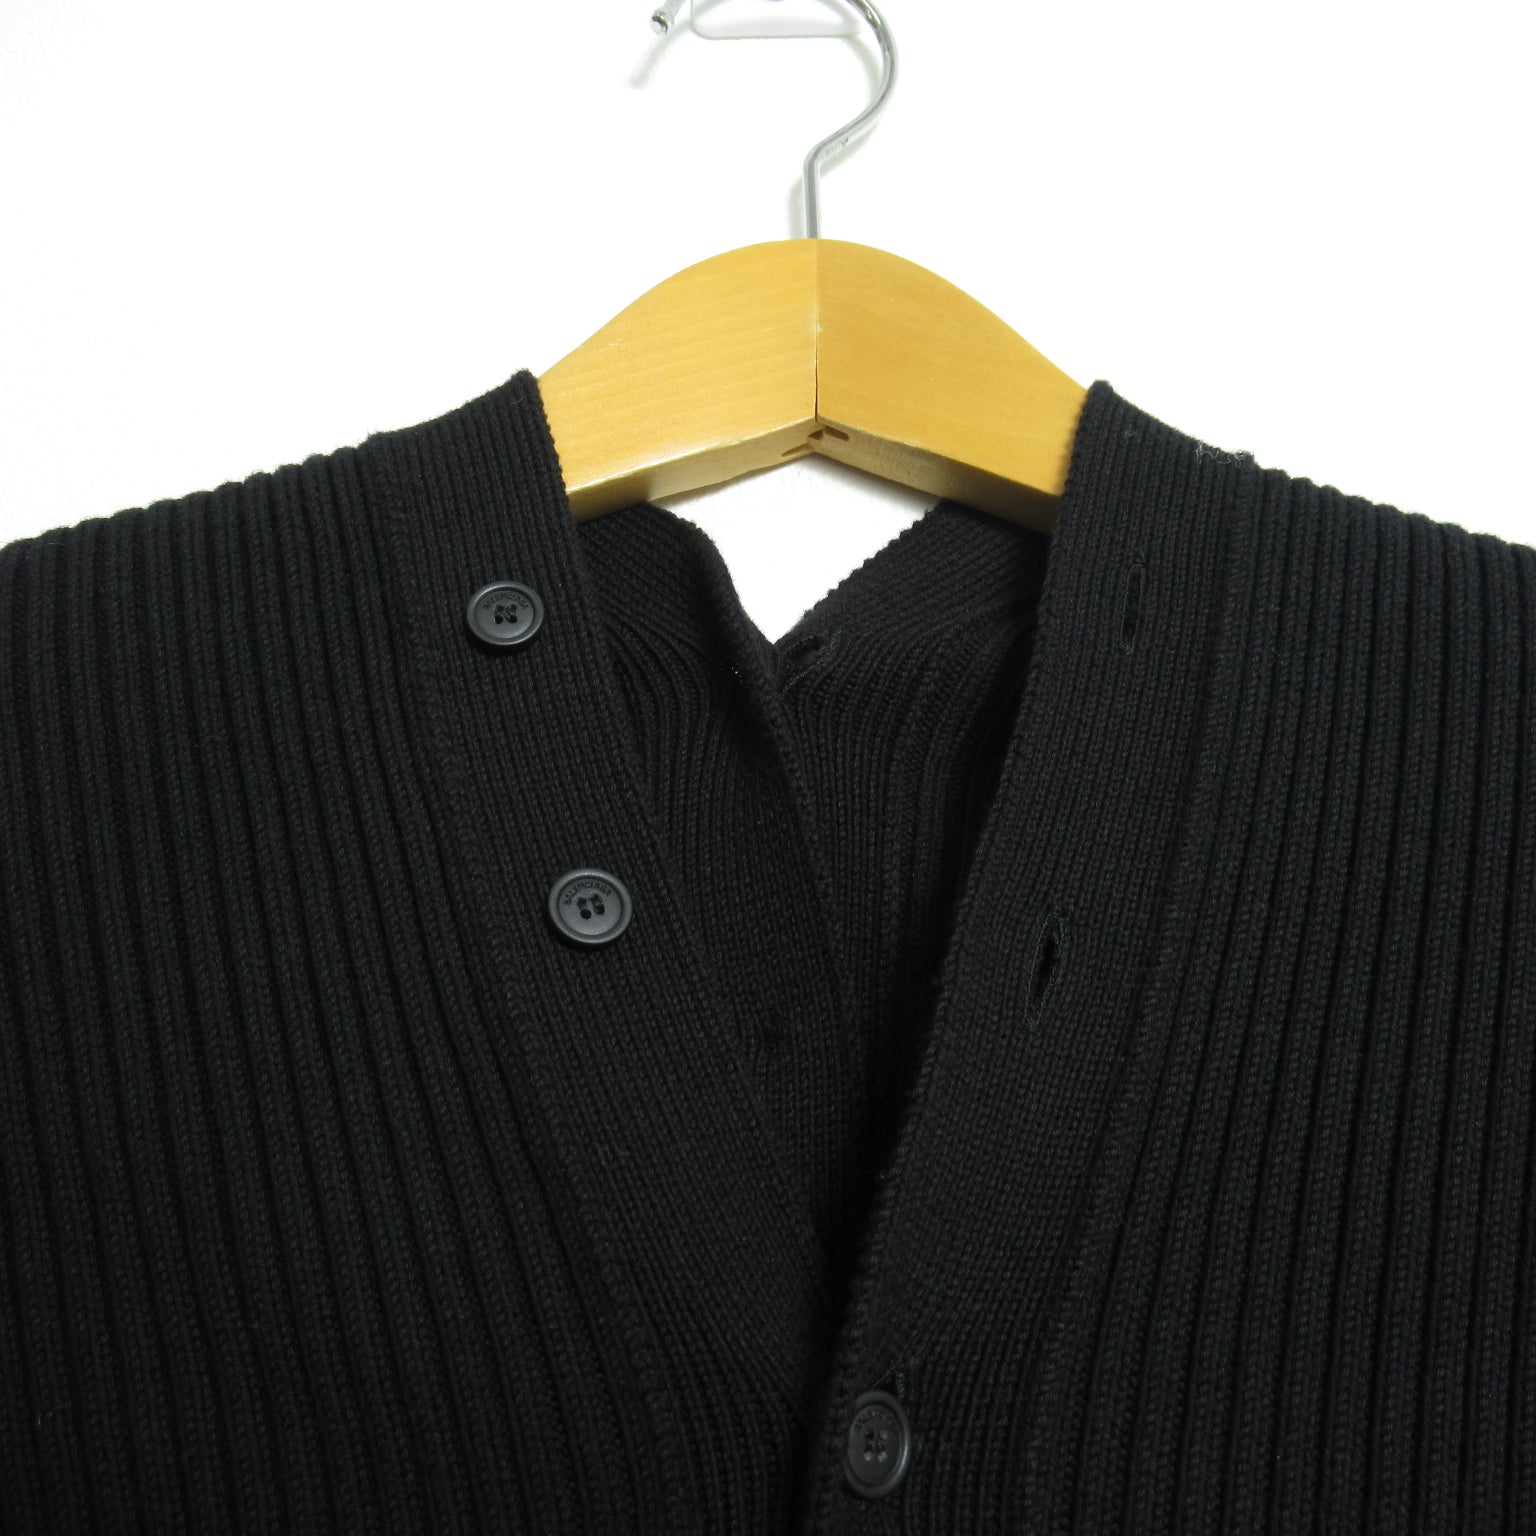 BALENCIAGA Buttons Design s  Tops Cotton  Black 626136T3185